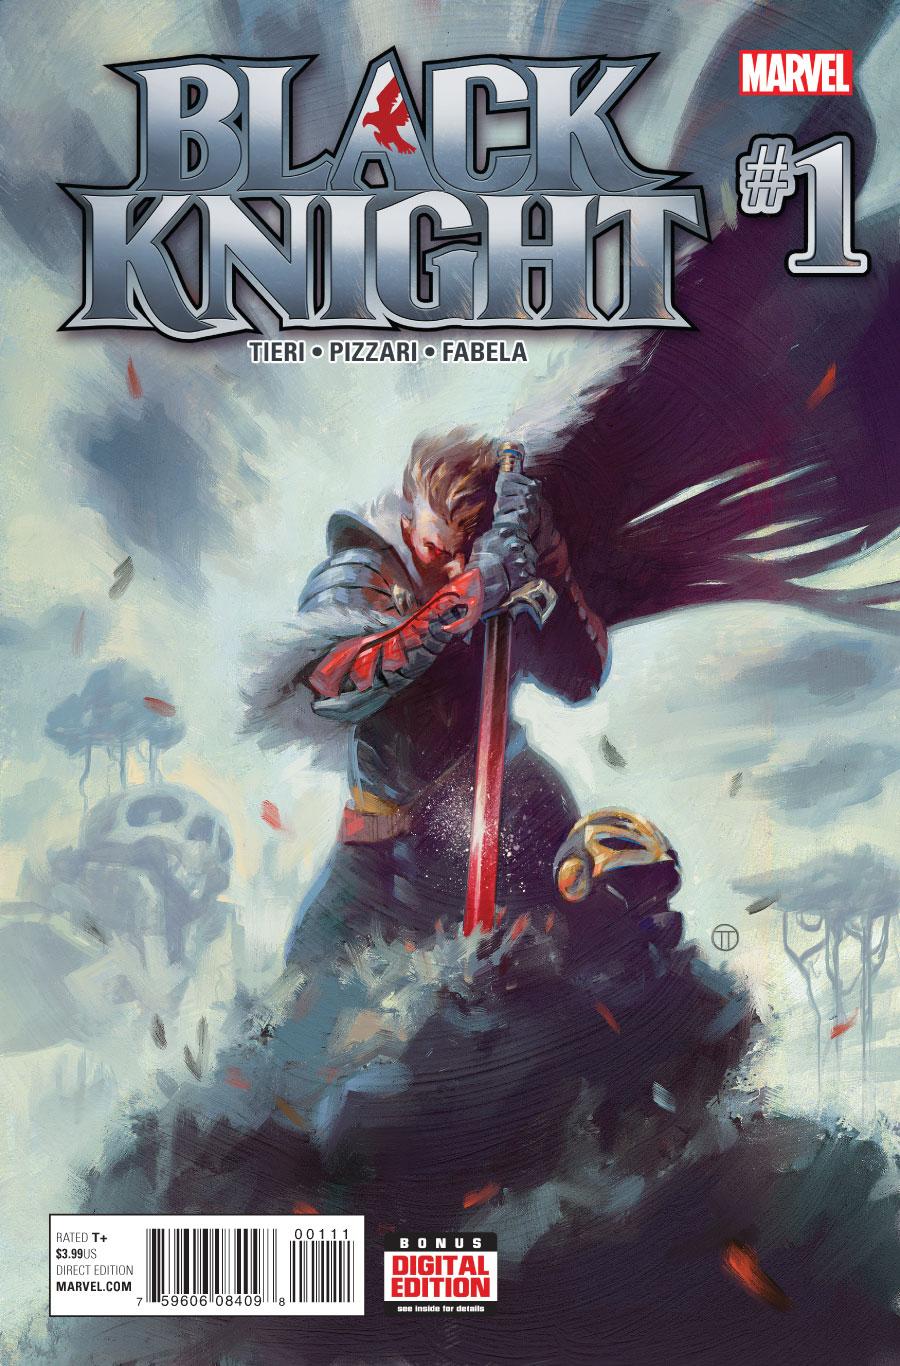 Black Knight Vol. 4 #1